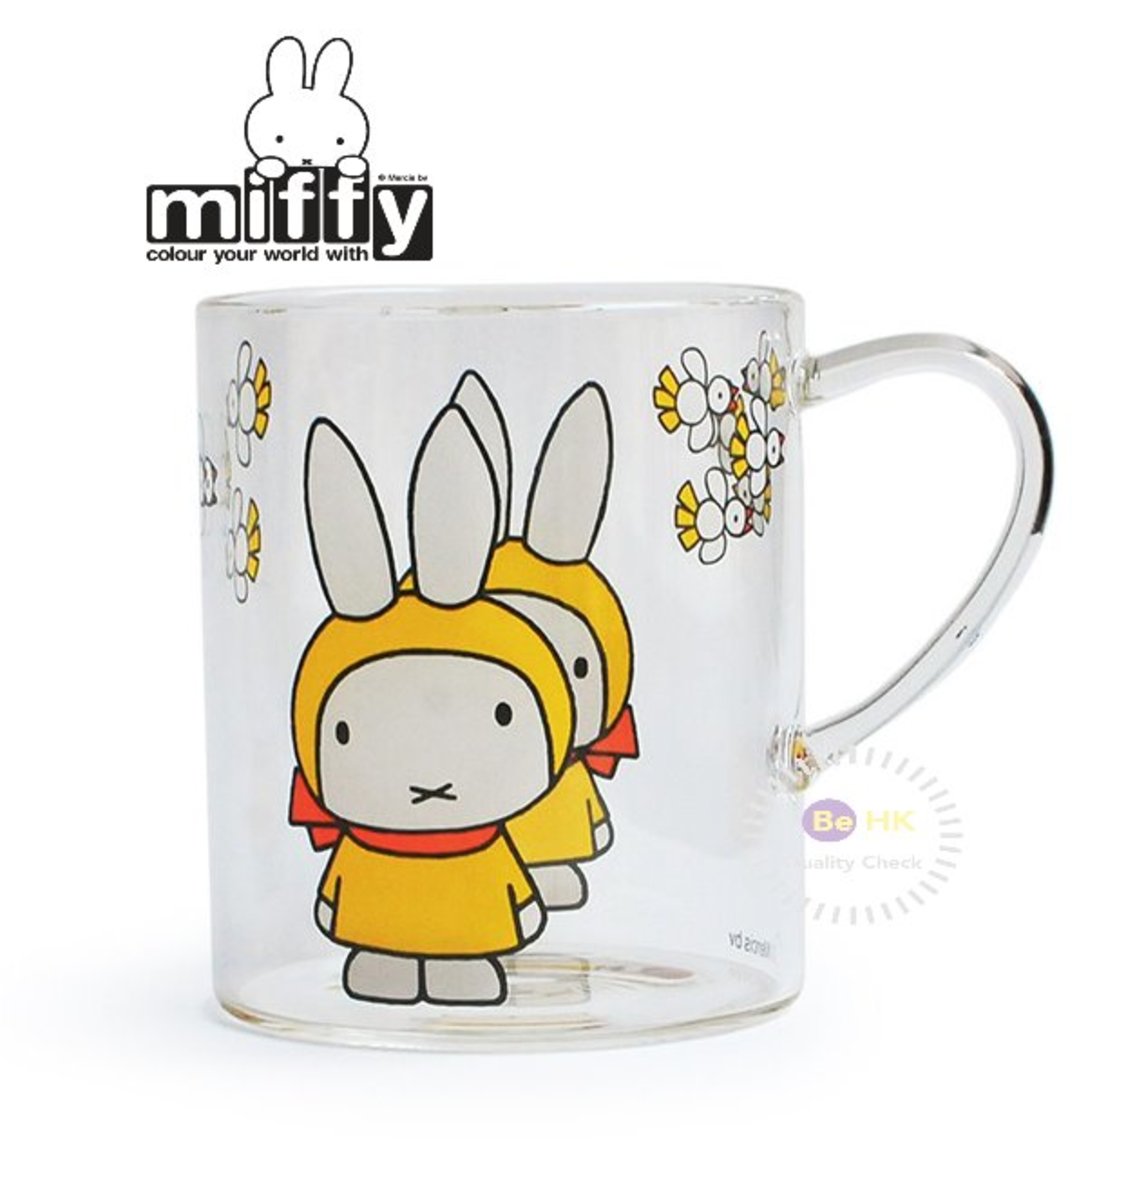 Miffy 日本製miffy杯耐熱杯fly Birds Miffy玻璃杯咖啡杯miffy Cup Hktvmall 香港最大網購平台